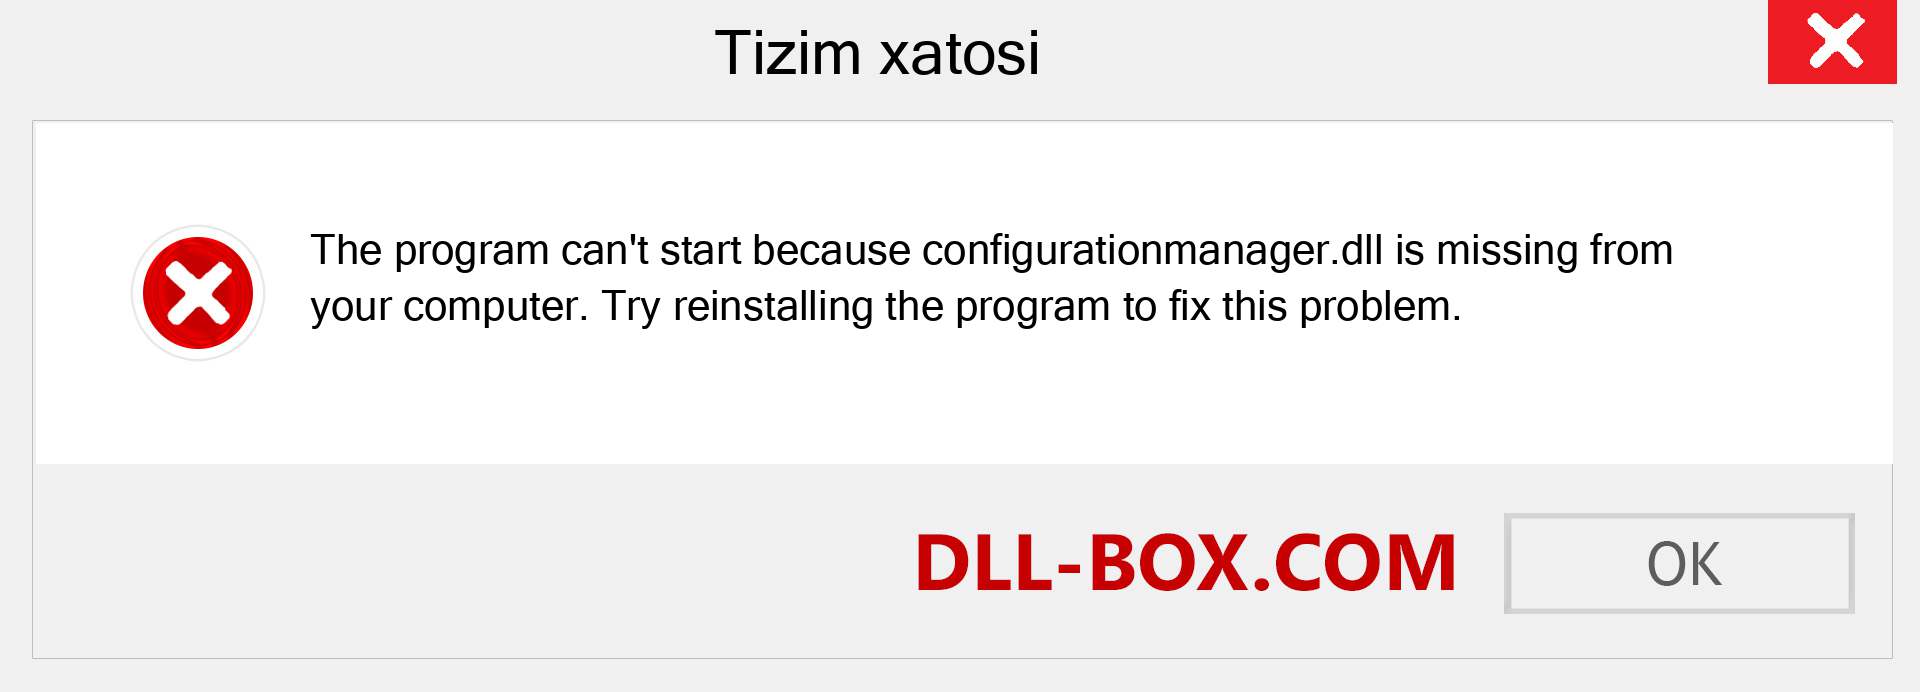 configurationmanager.dll fayli yo'qolganmi?. Windows 7, 8, 10 uchun yuklab olish - Windowsda configurationmanager dll etishmayotgan xatoni tuzating, rasmlar, rasmlar